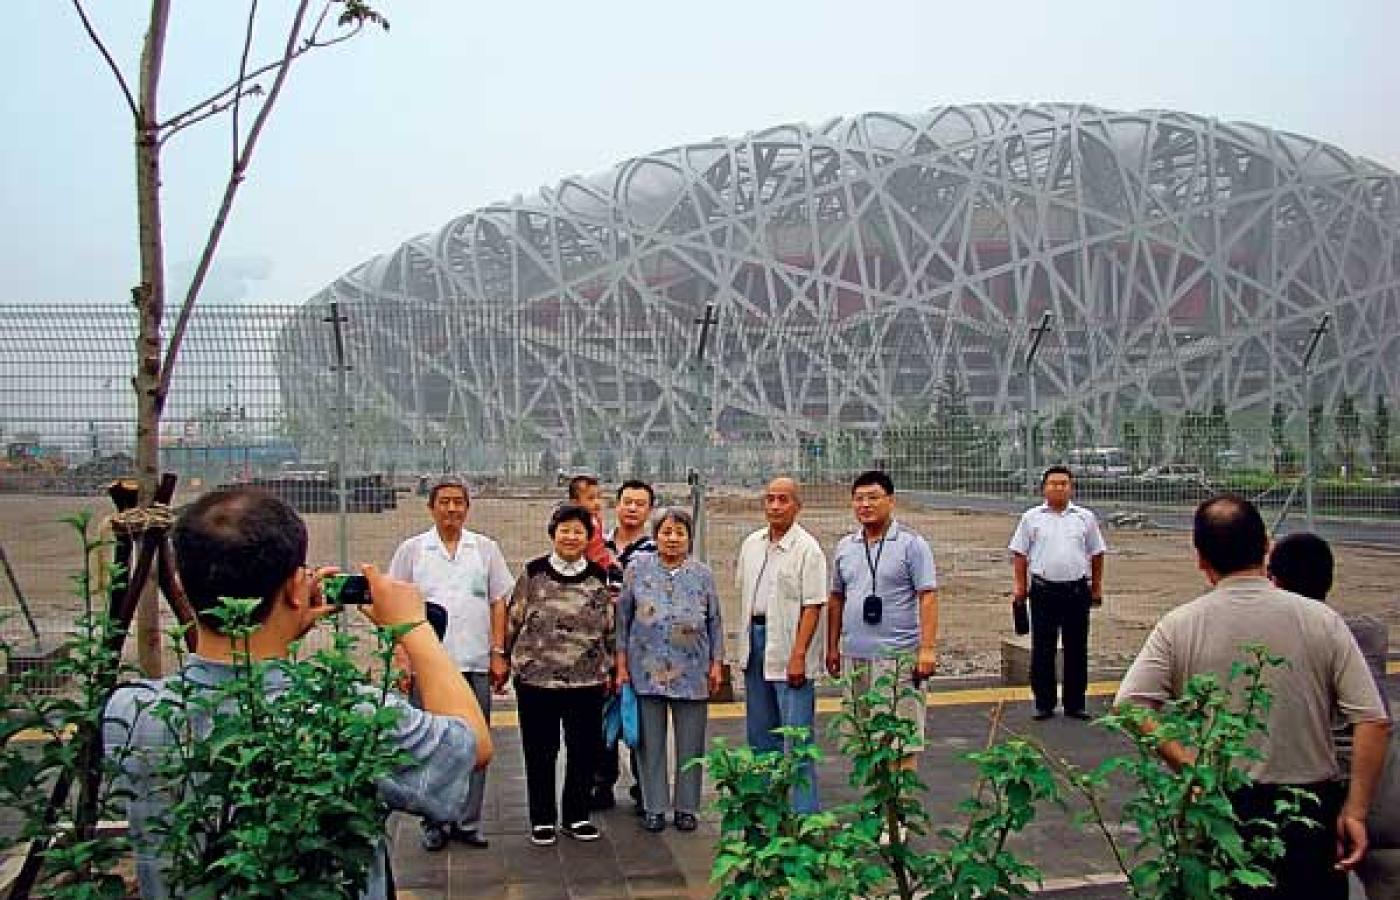 Ptasie gniazdo. Chińczycy są dumni ze swojego stadionu narodowego. Fot. Marek Ostrowski.